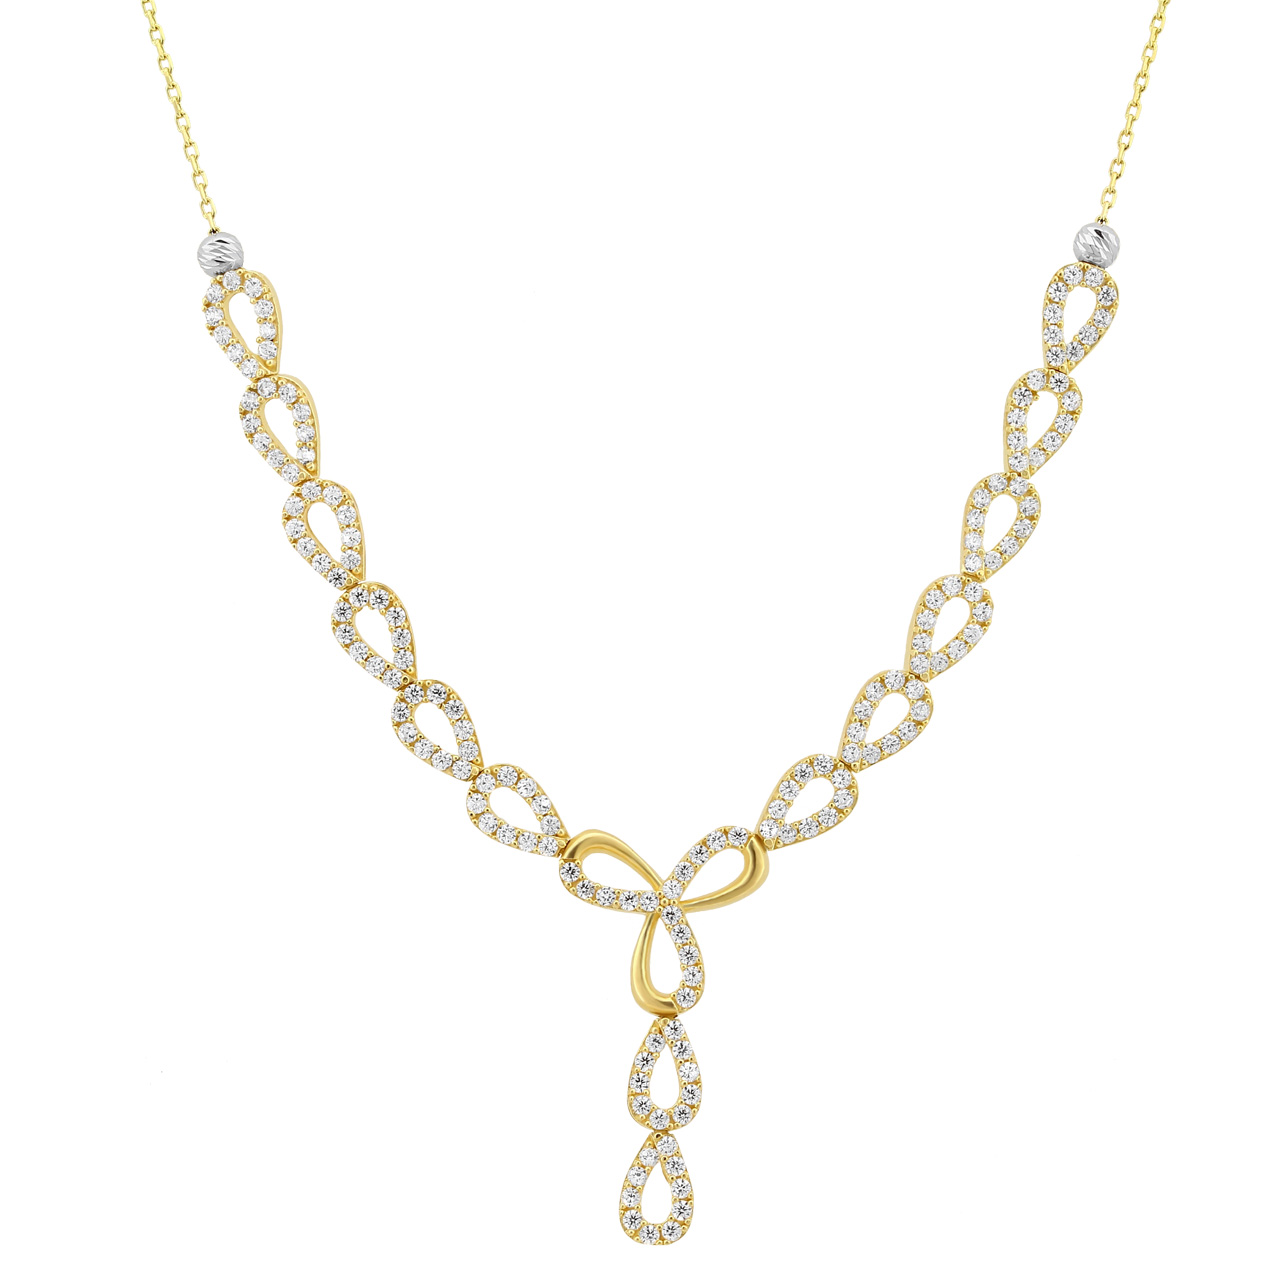 Goldcollier Halskette Fantasieform 585er Gold CL16014